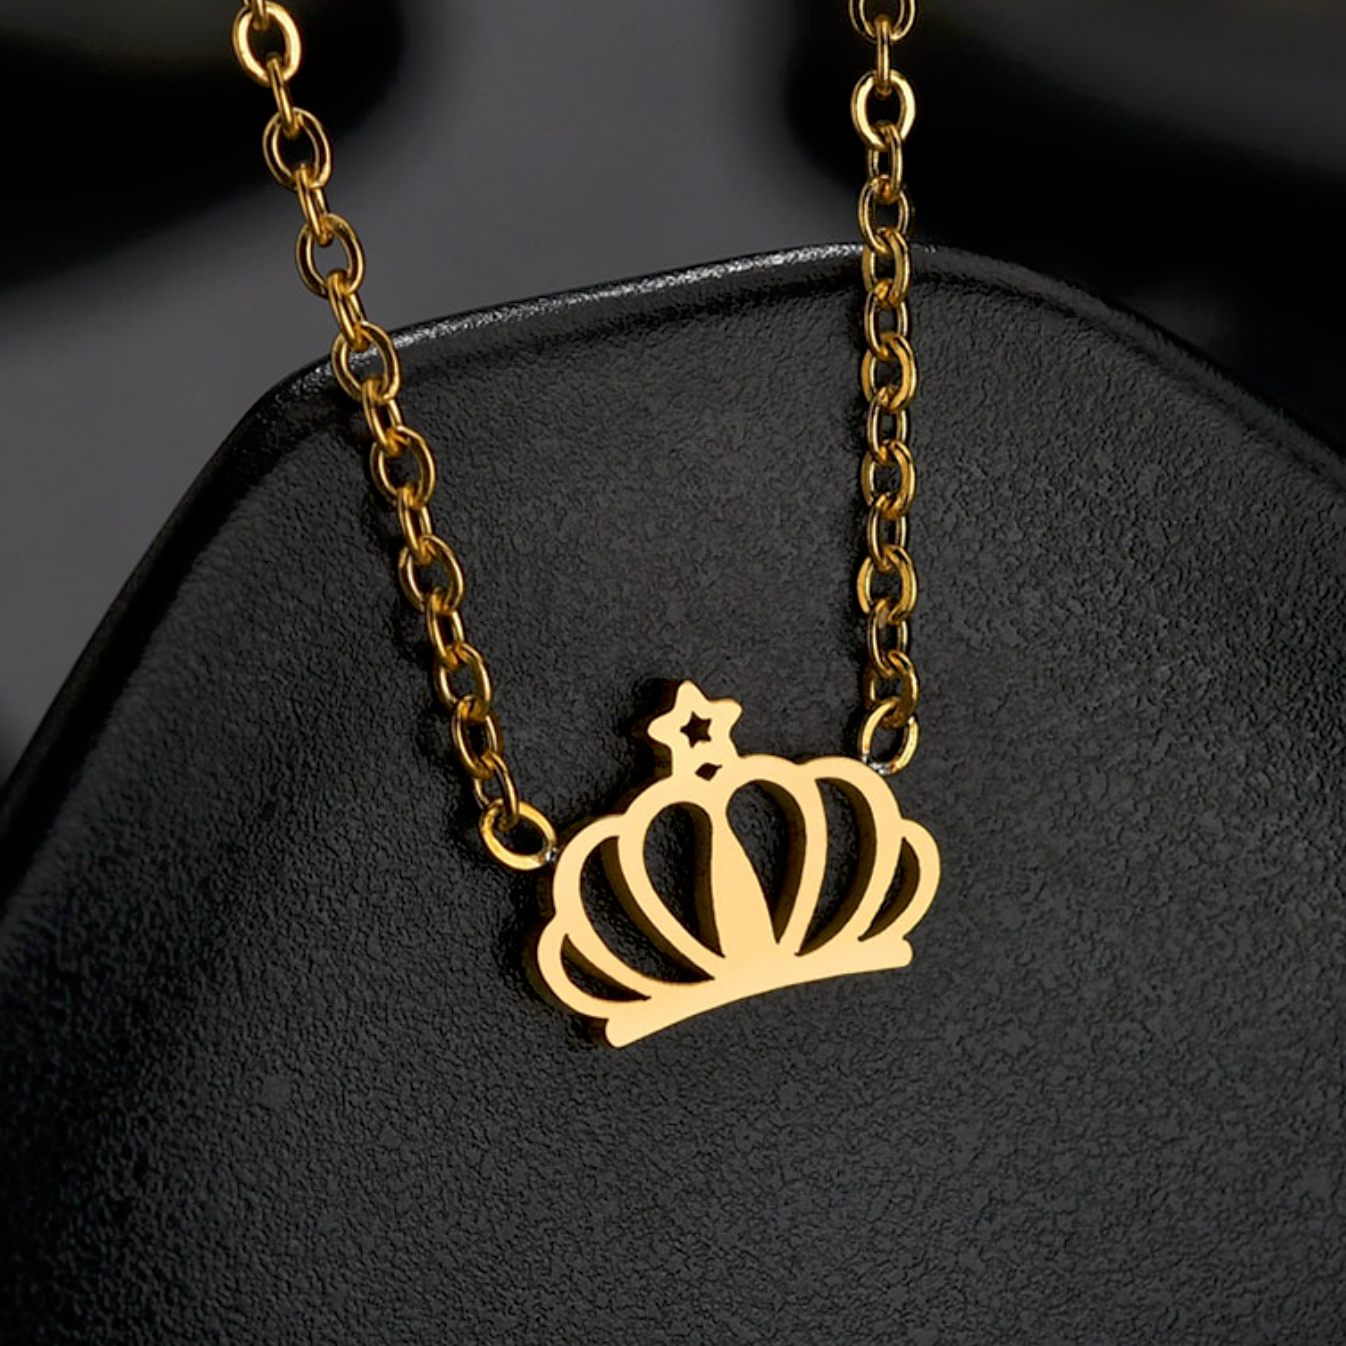 Collier acier inoxydable doré pendentif petite couronne dorée 1 cm.  Détails produit : Couleur or. Acier inoxydable doré. Pendentif petite couronne dorée. 